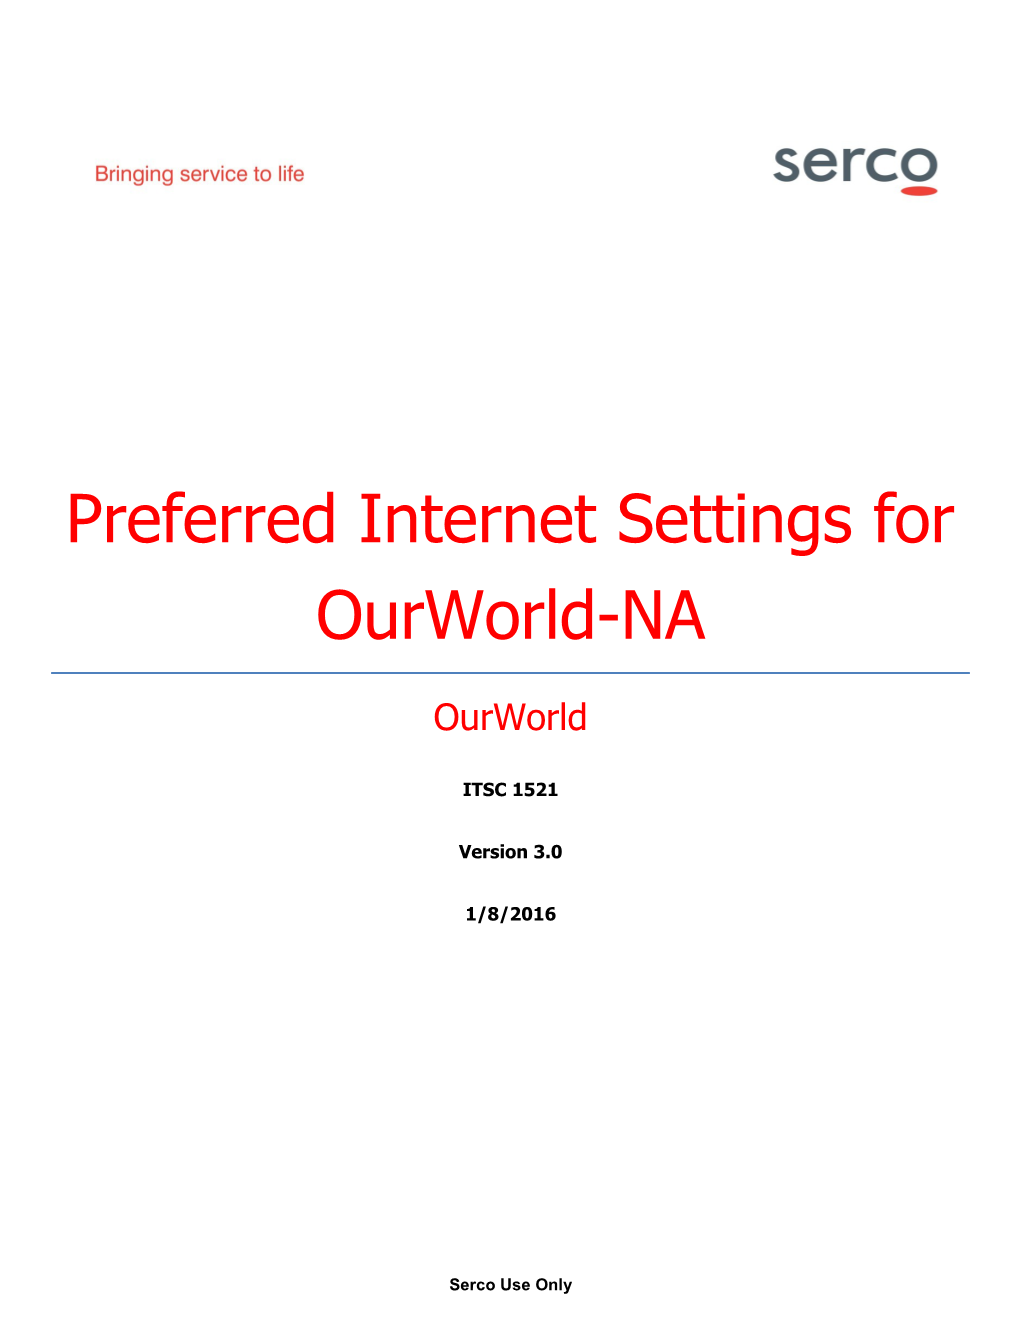 Ourworld-NA Preferred Internet Settings